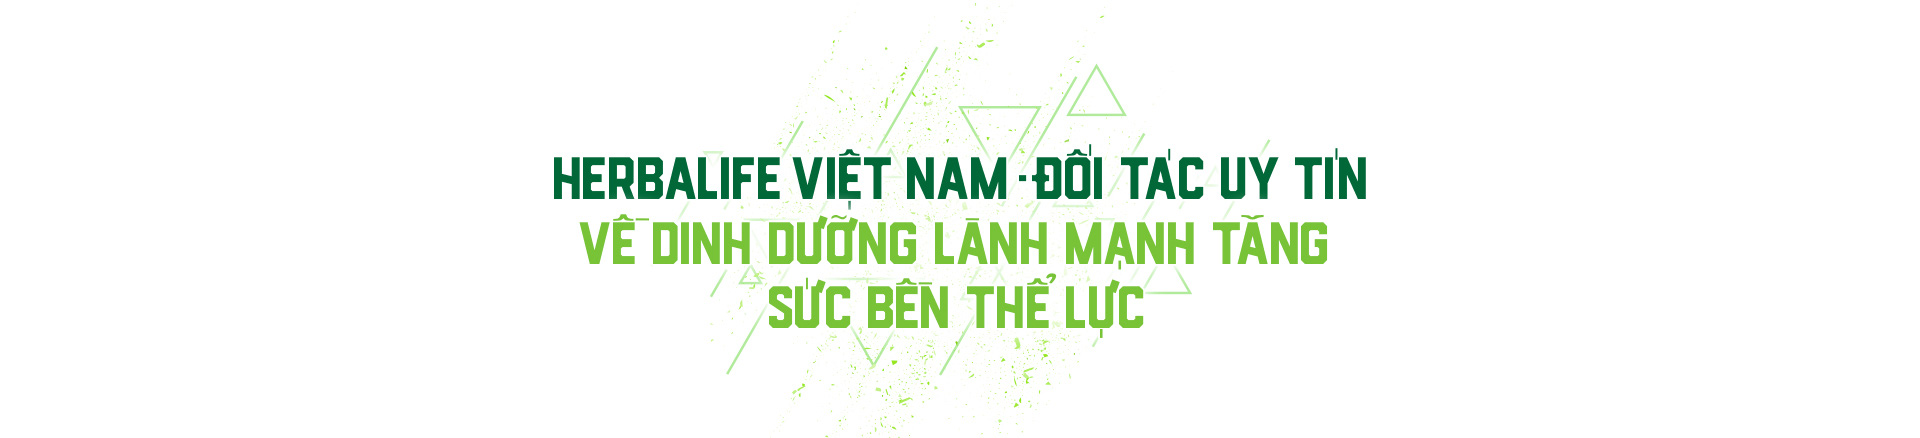 Herbalife - Dinh dưỡng lành mạnh tiếp sức các đội tuyển bóng đá Việt Nam - Ảnh 6.